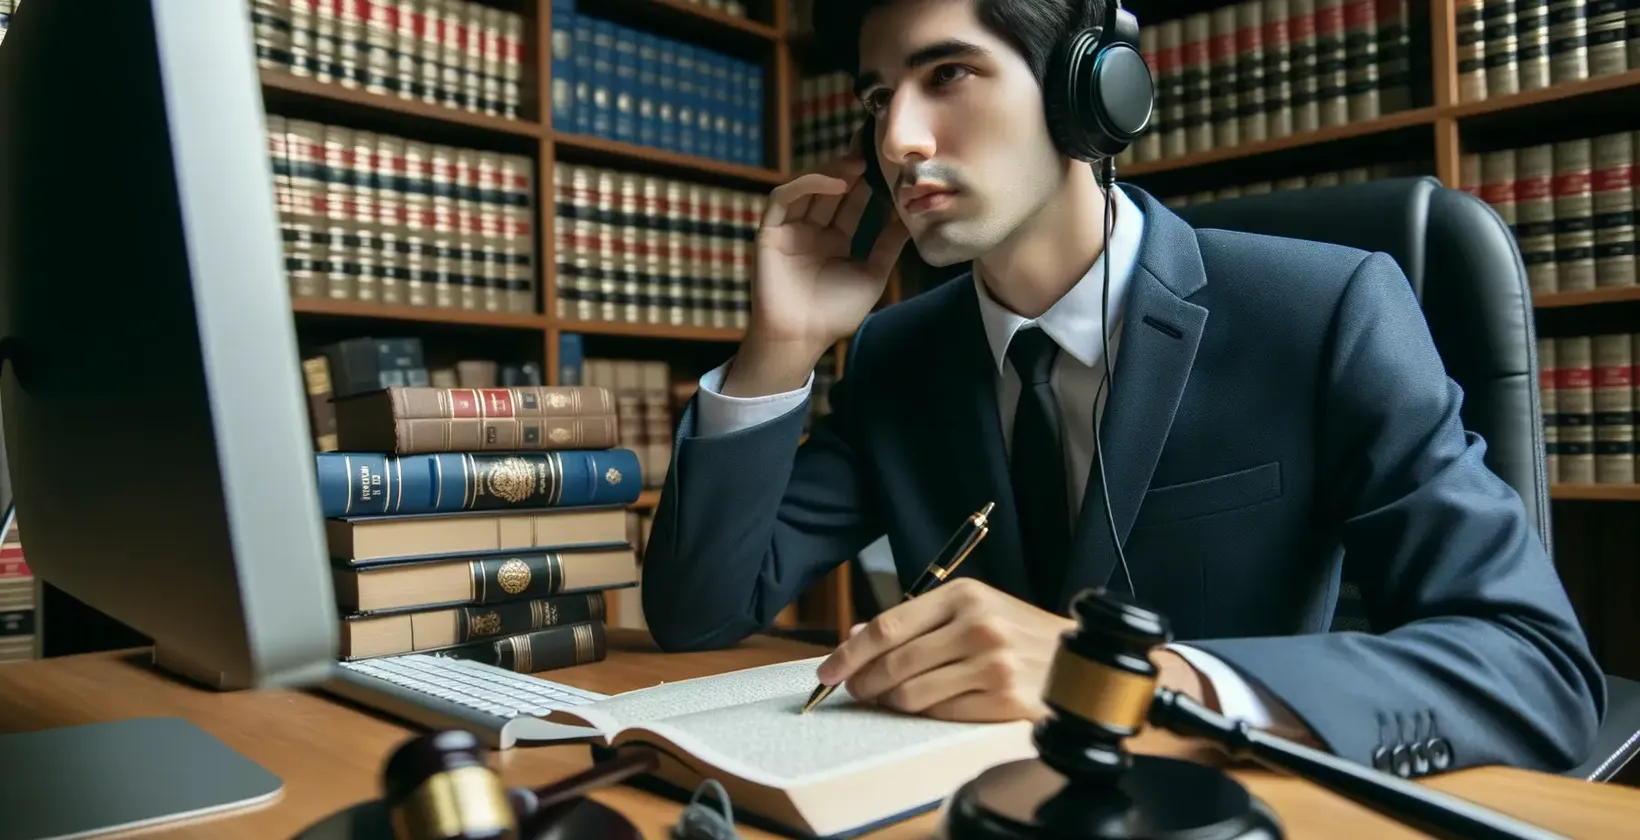 Services de transcription juridique présentés par un professionnel muni d'écouteurs dans une bibliothèque juridique.